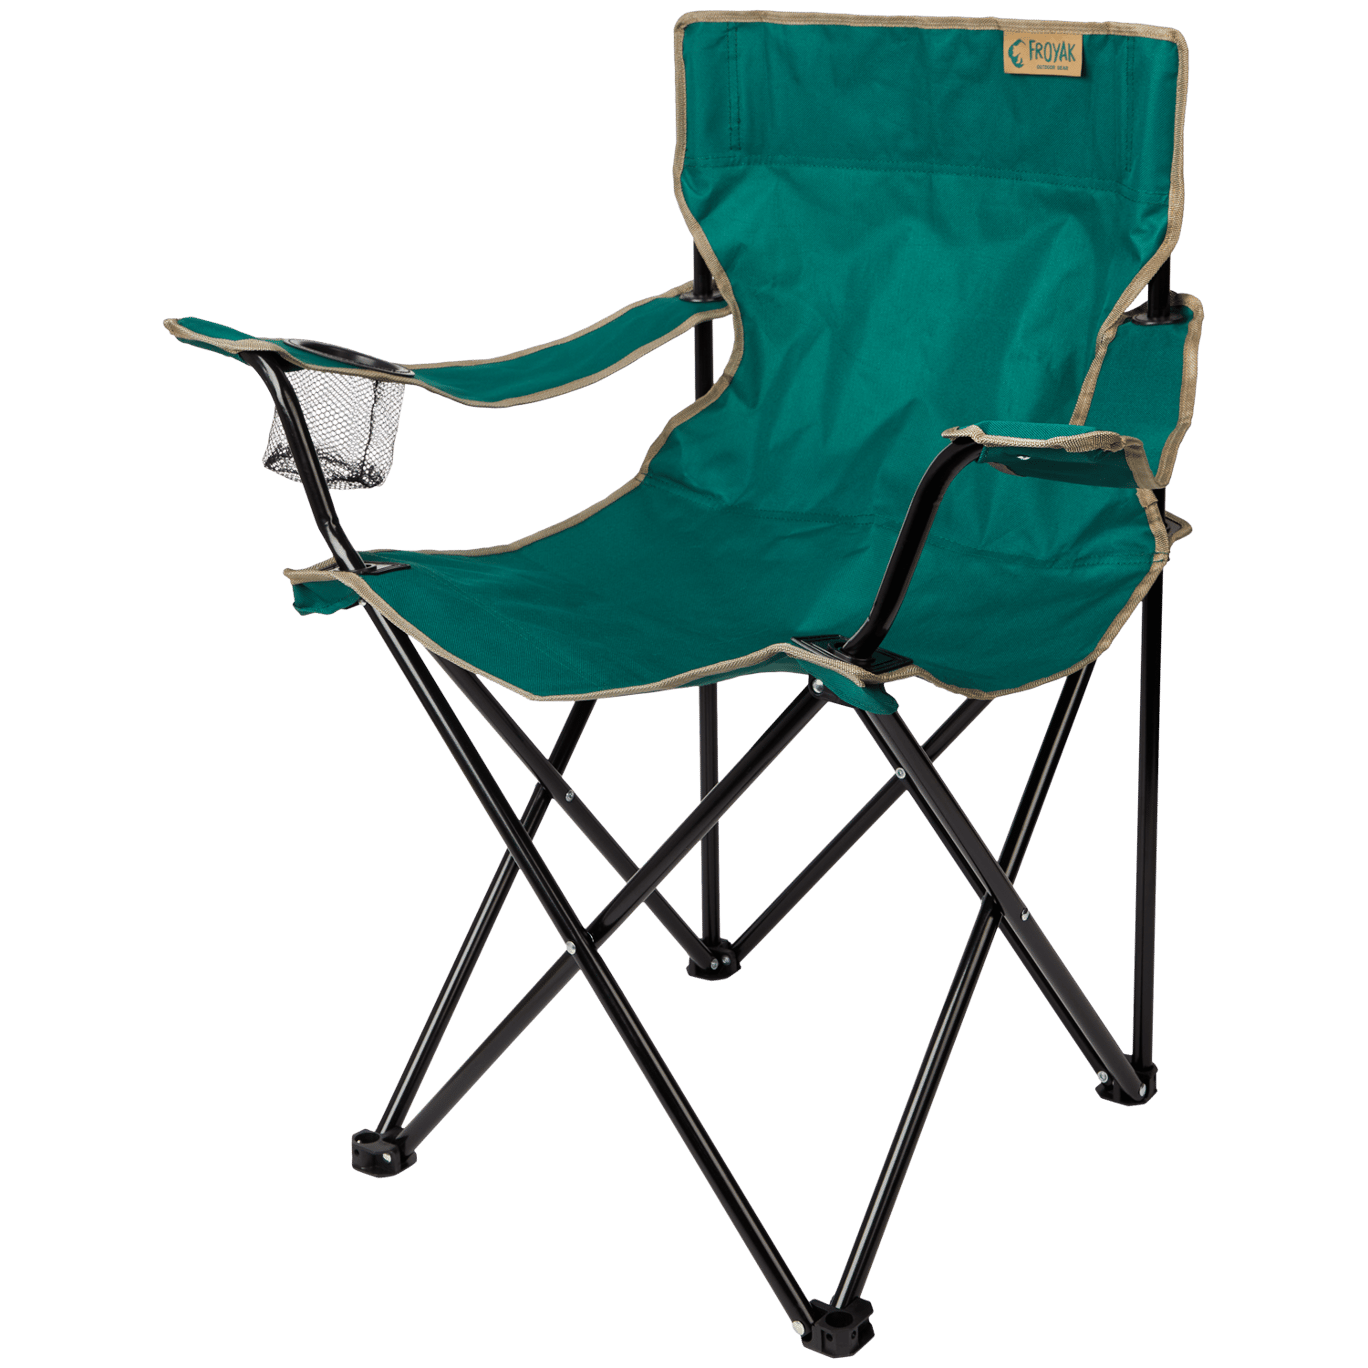 verzending verhaal ziek Froyak opvouwbare campingstoel | Action.com